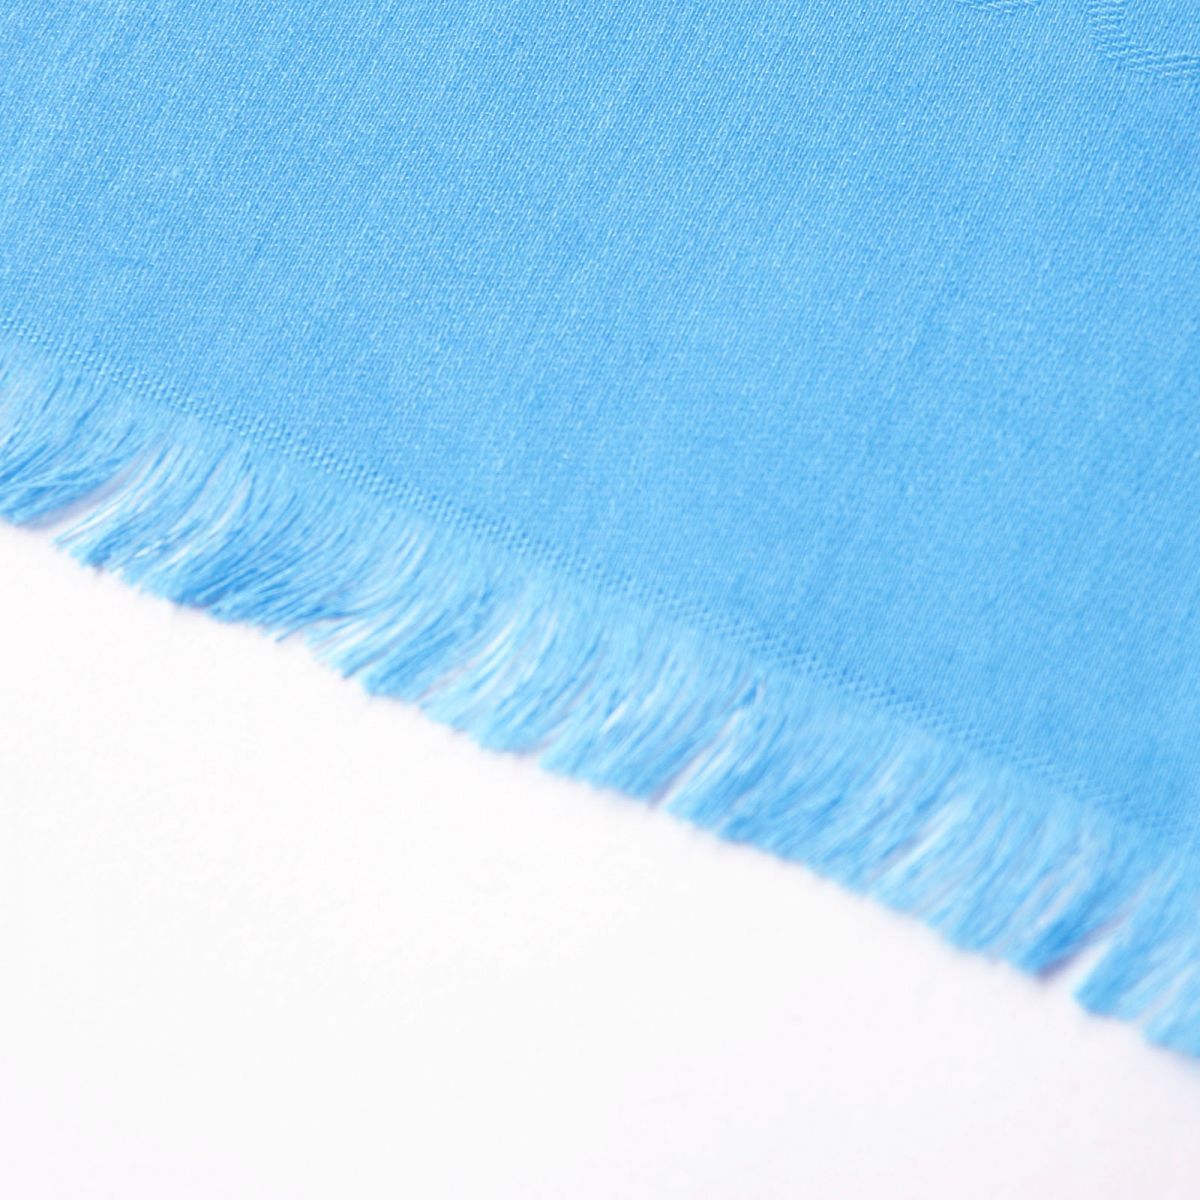  превосходный товар ^ стандартный товар LOEWE Loewe дыра грамм общий рисунок шерсть × шелк × кашемир большой размер шаль / палантин / шарф 45×200 бирюзовый голубой сделано в Италии 